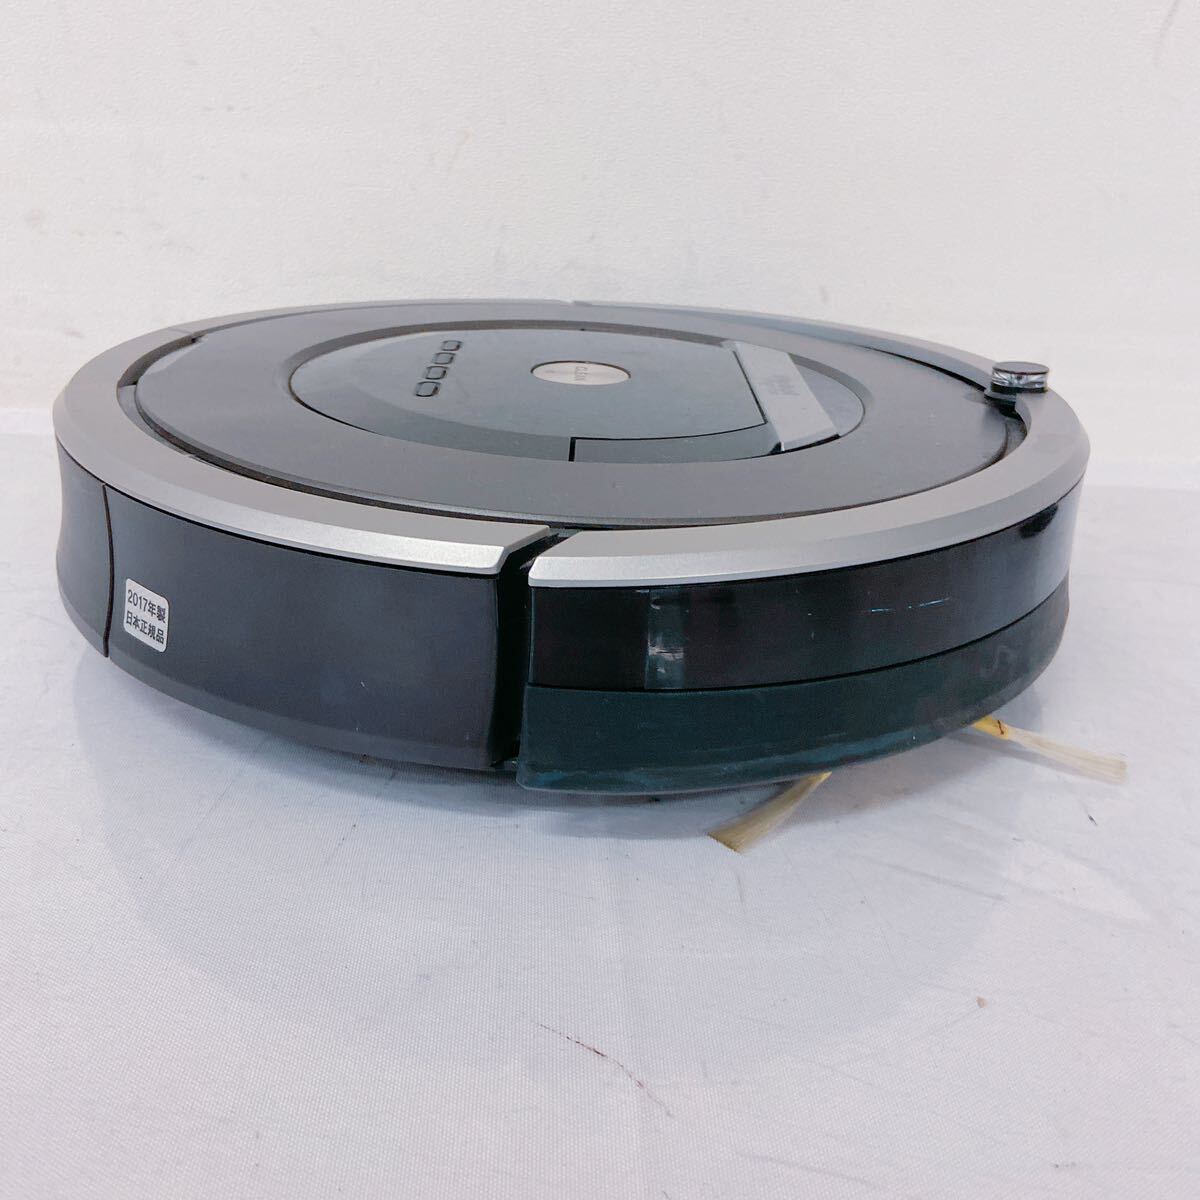 4A157 iRobot I робот Roomba roomba пылесос 870 очиститель бытовая техника с зарядным устройством электризация проверка settled 